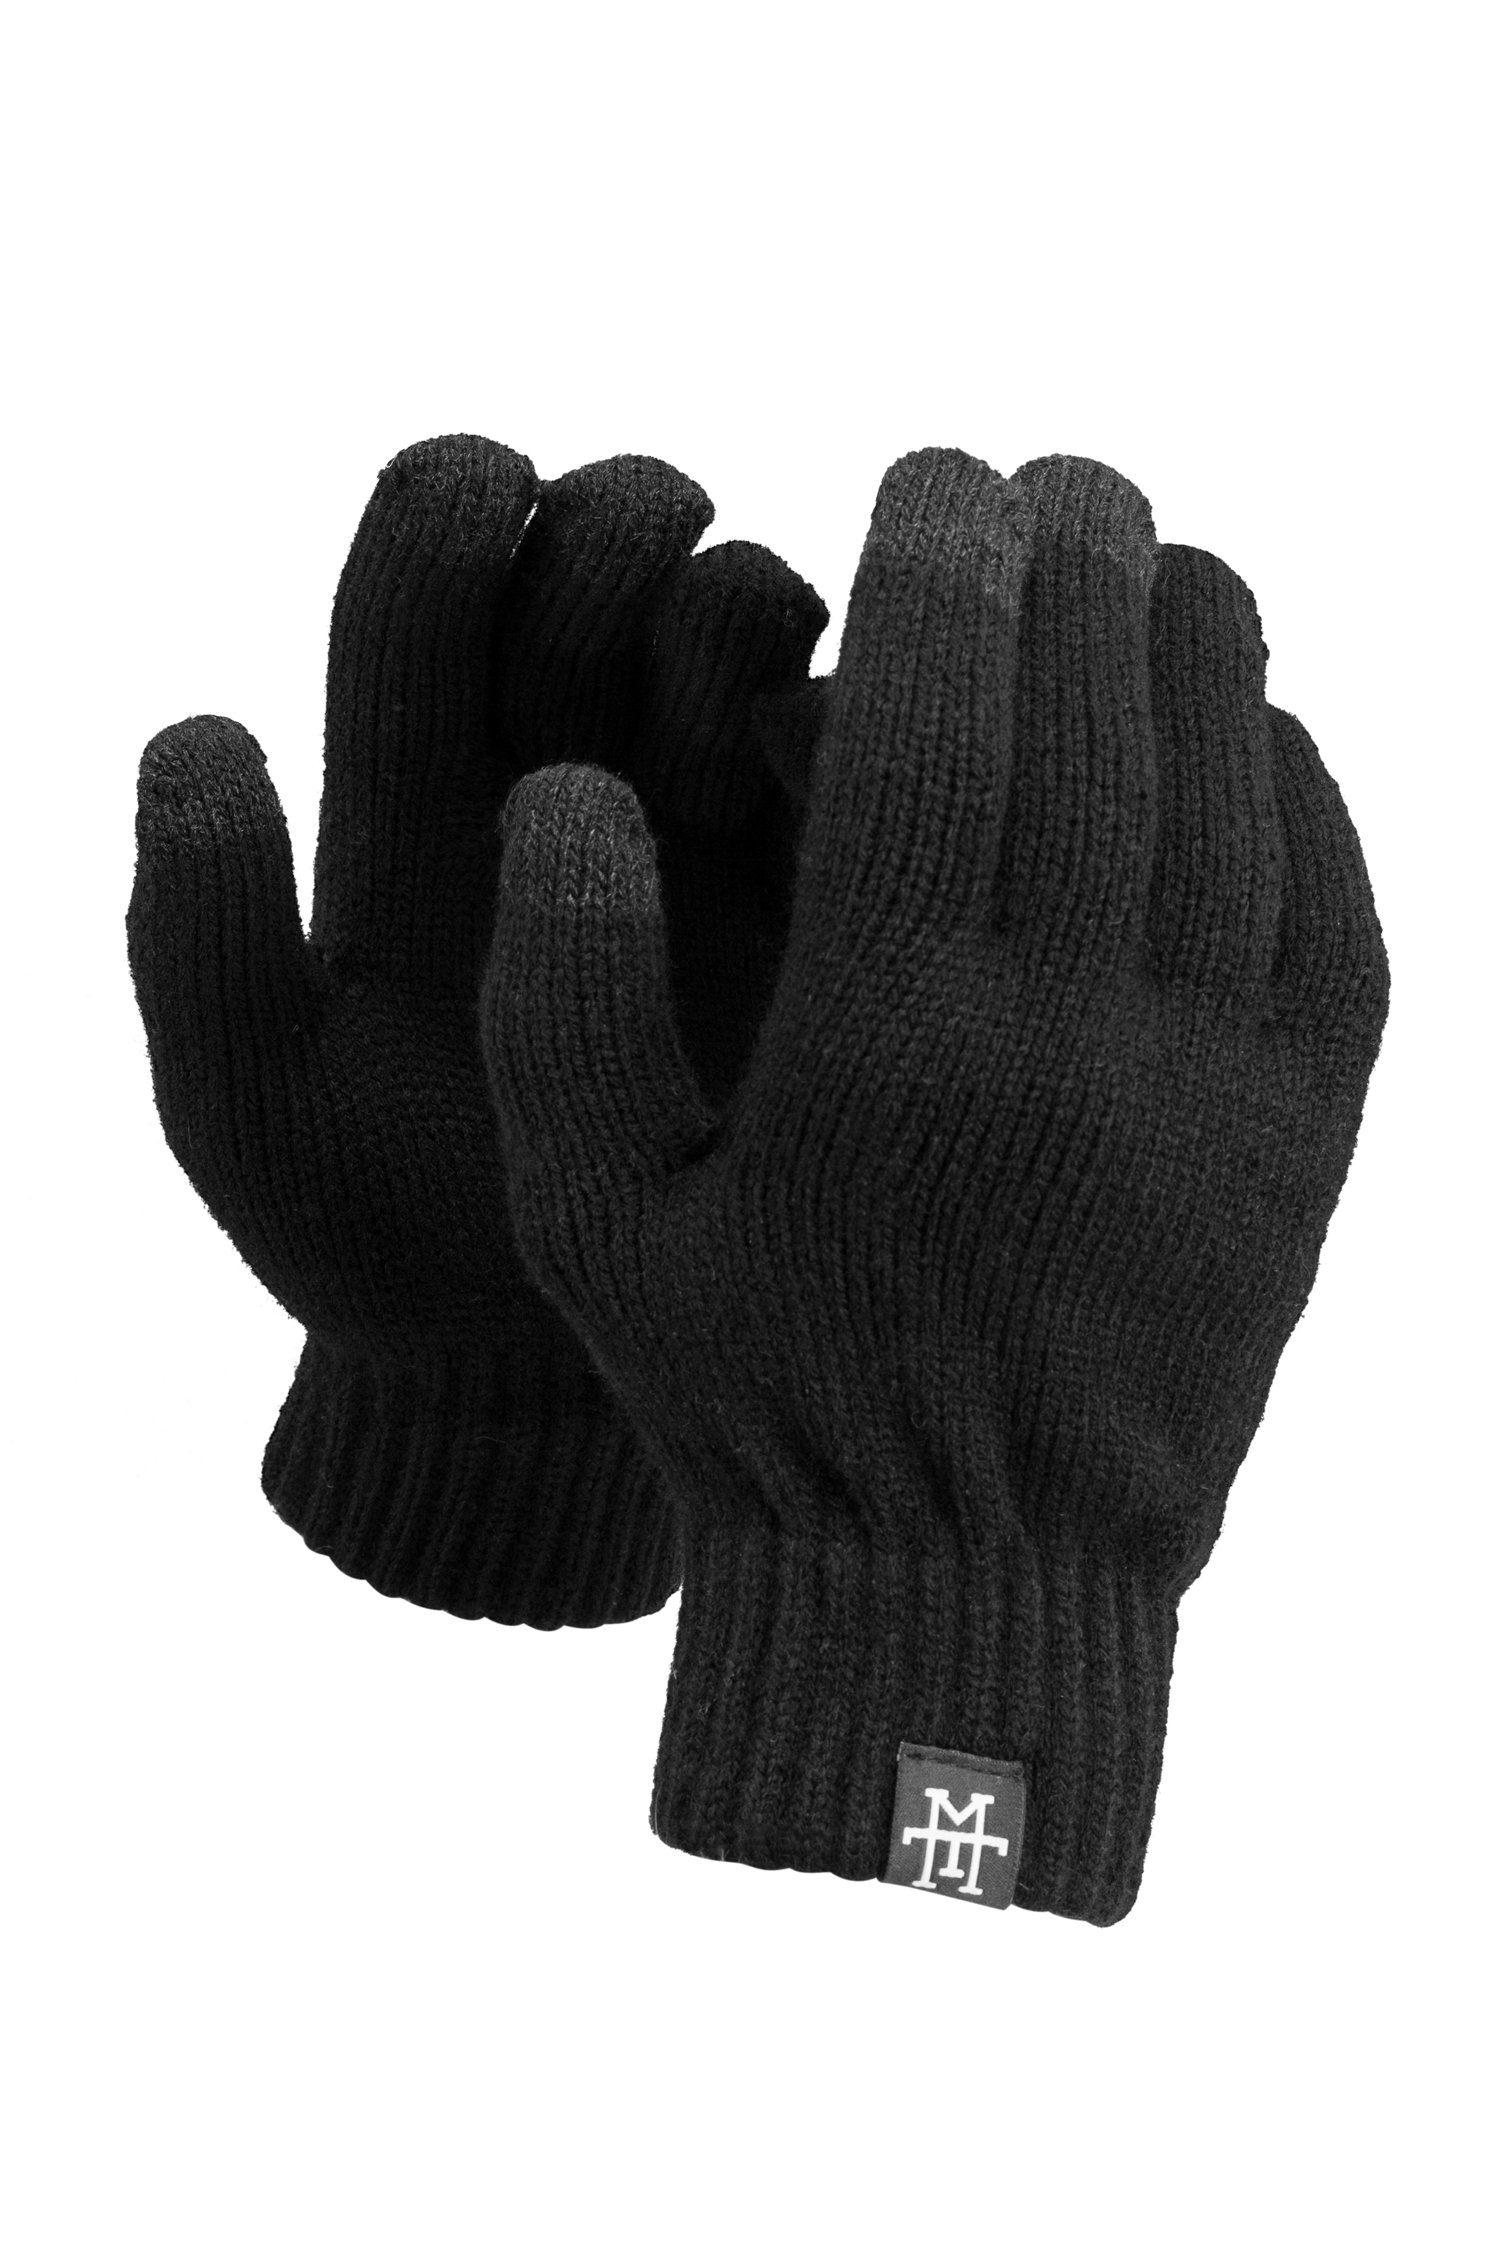 Manufaktur13 Baumwollhandschuhe Smart Gloves - Smartphone Handschuhe mit Thinsulate Futter Asphalt